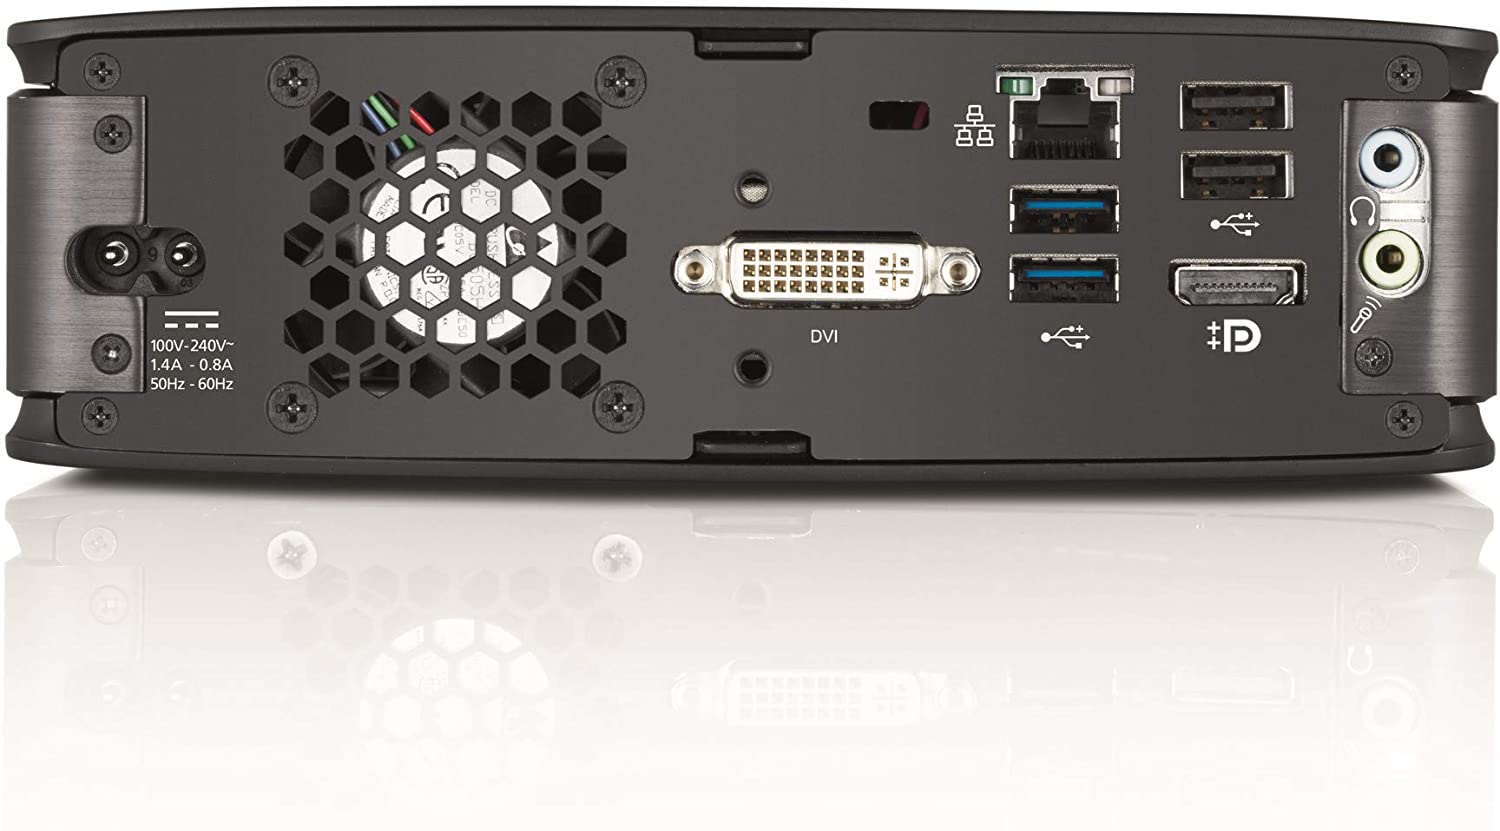 Fujitsu Esprimo Q920 - Mini PC 0 Watt Intel Core i5 4570t 8gb 256gb ssd   Win 10 Pro ULTRA SLIM